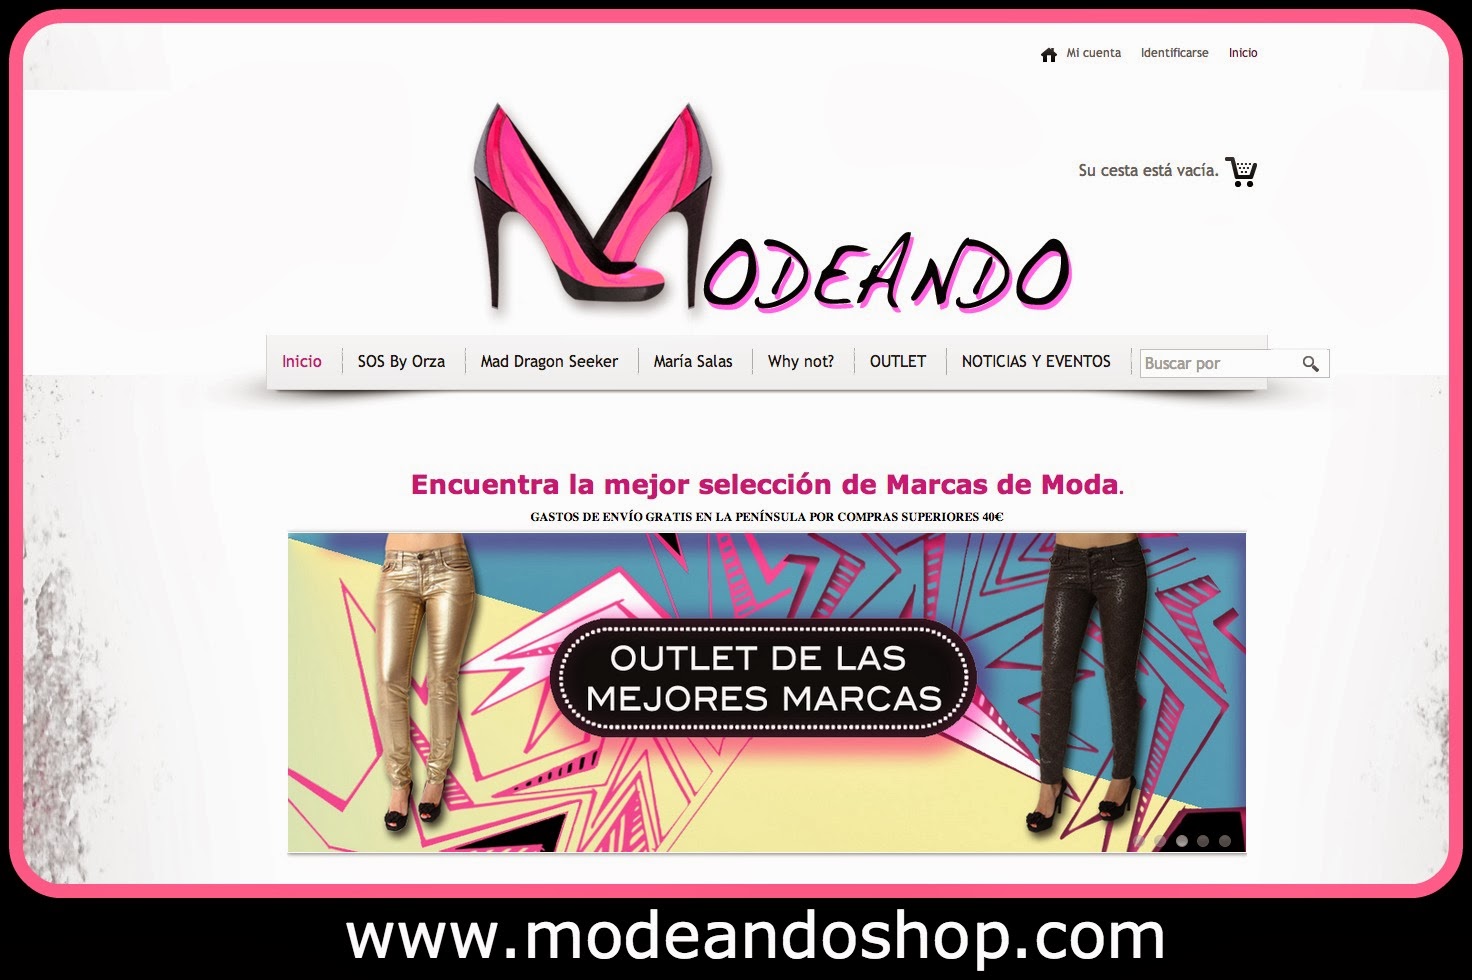 Tienda online de marcas internacionales. SOS by Orza, Mad dragon Seeker, Maria Salas